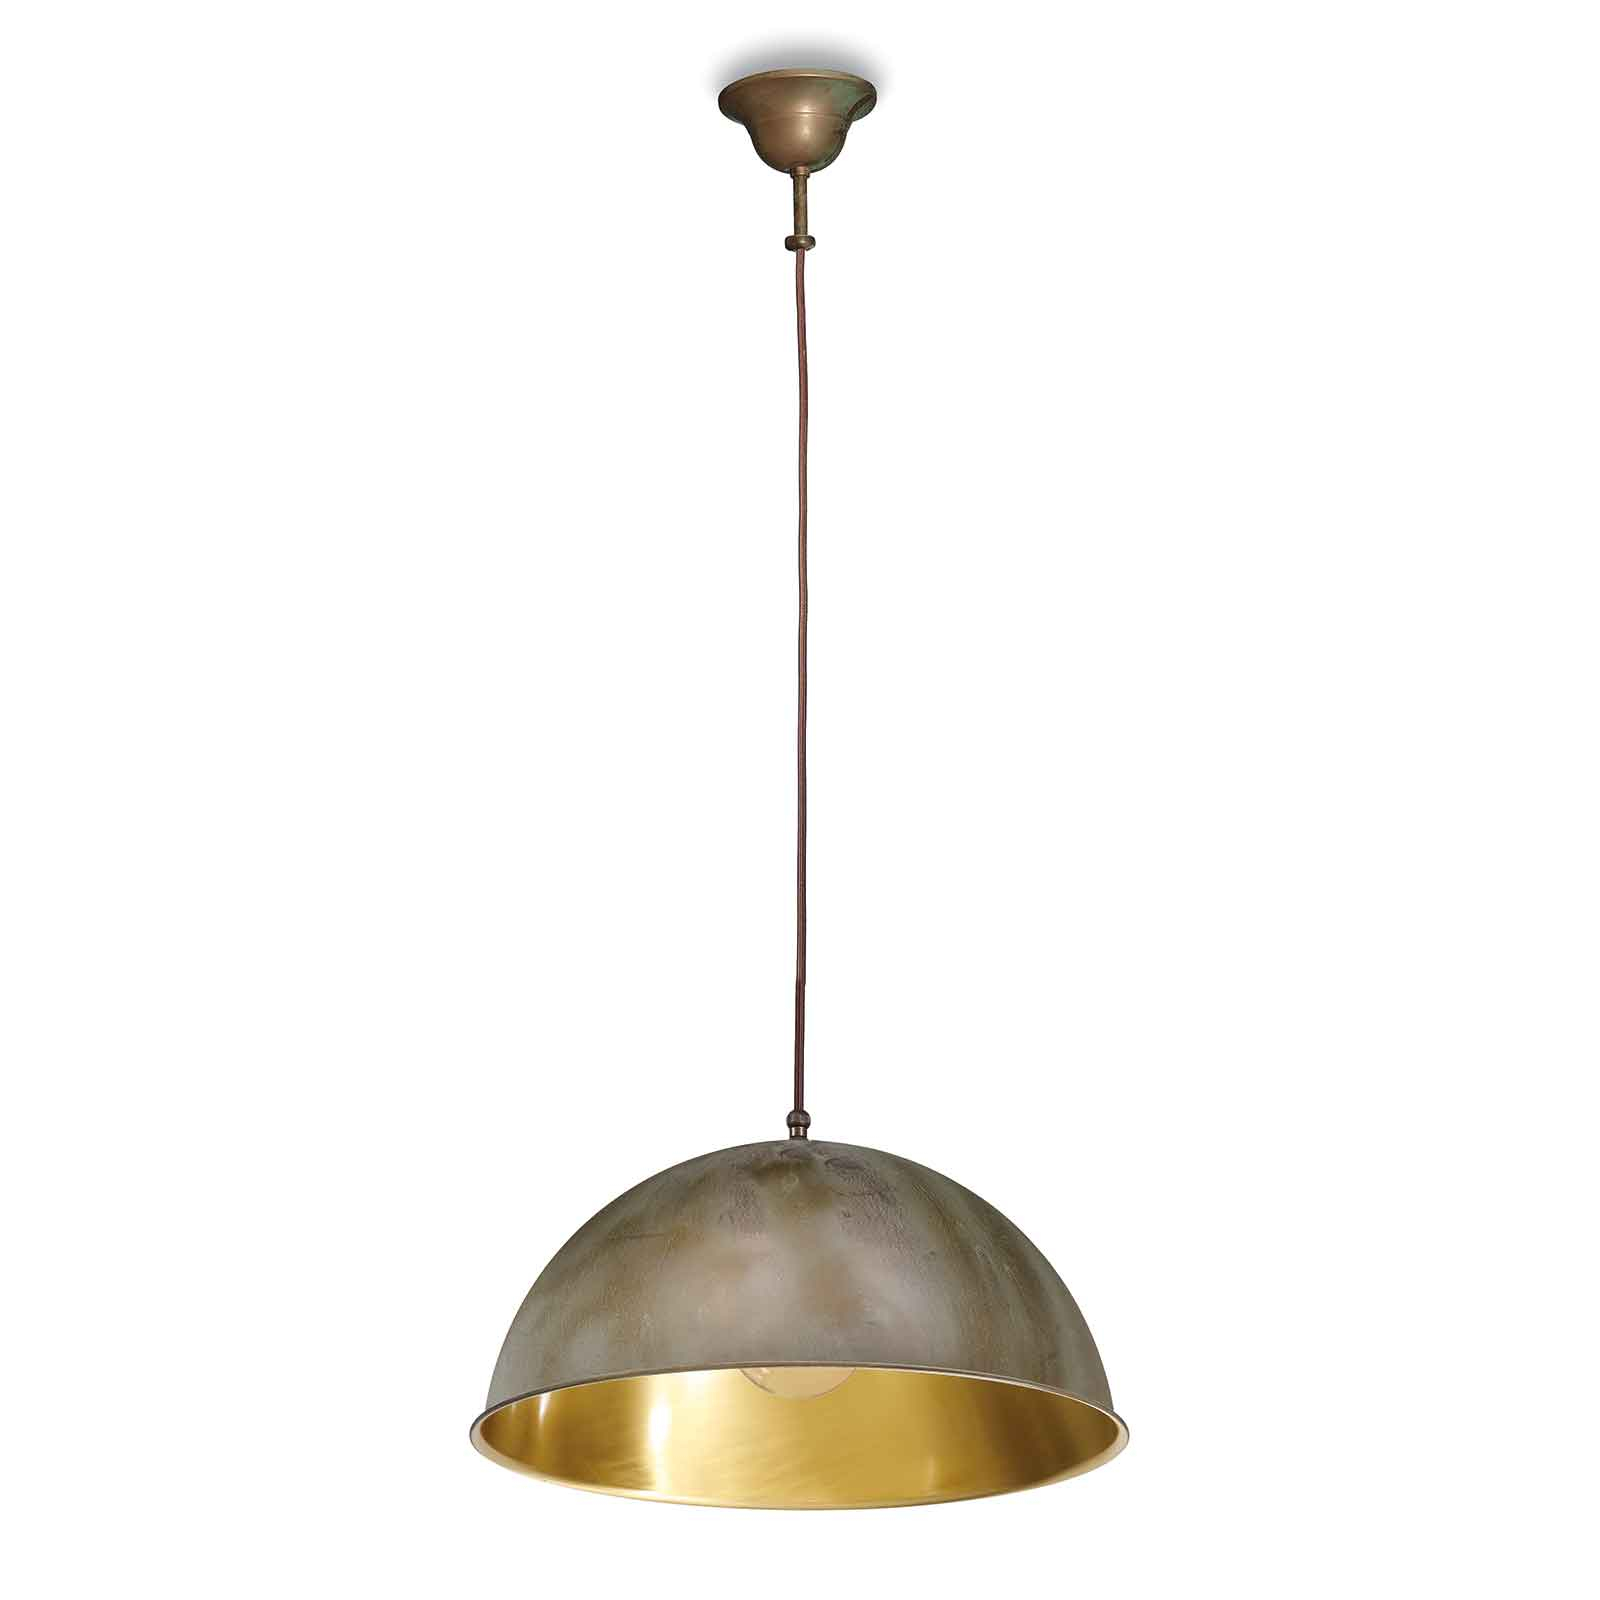 Hanglamp Circle goud / messing antiek, Ø30cm